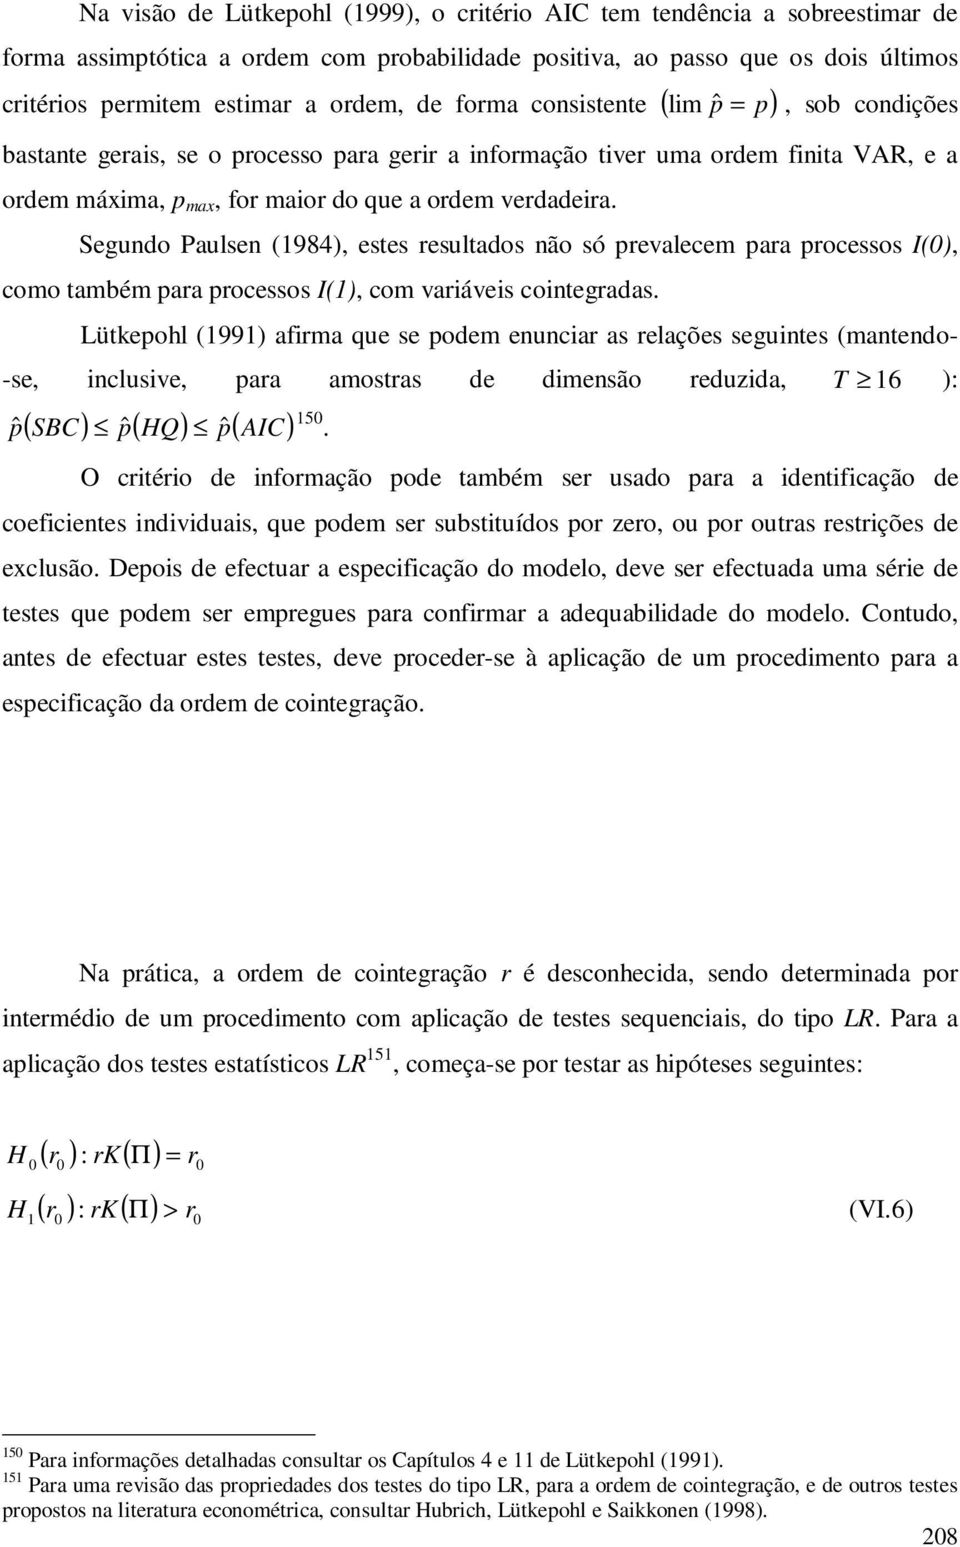 Segundo Paulsen (1984), eses resulados não só prevalecem para processos I(), como ambém para processos I(1), com variáveis coinegradas.